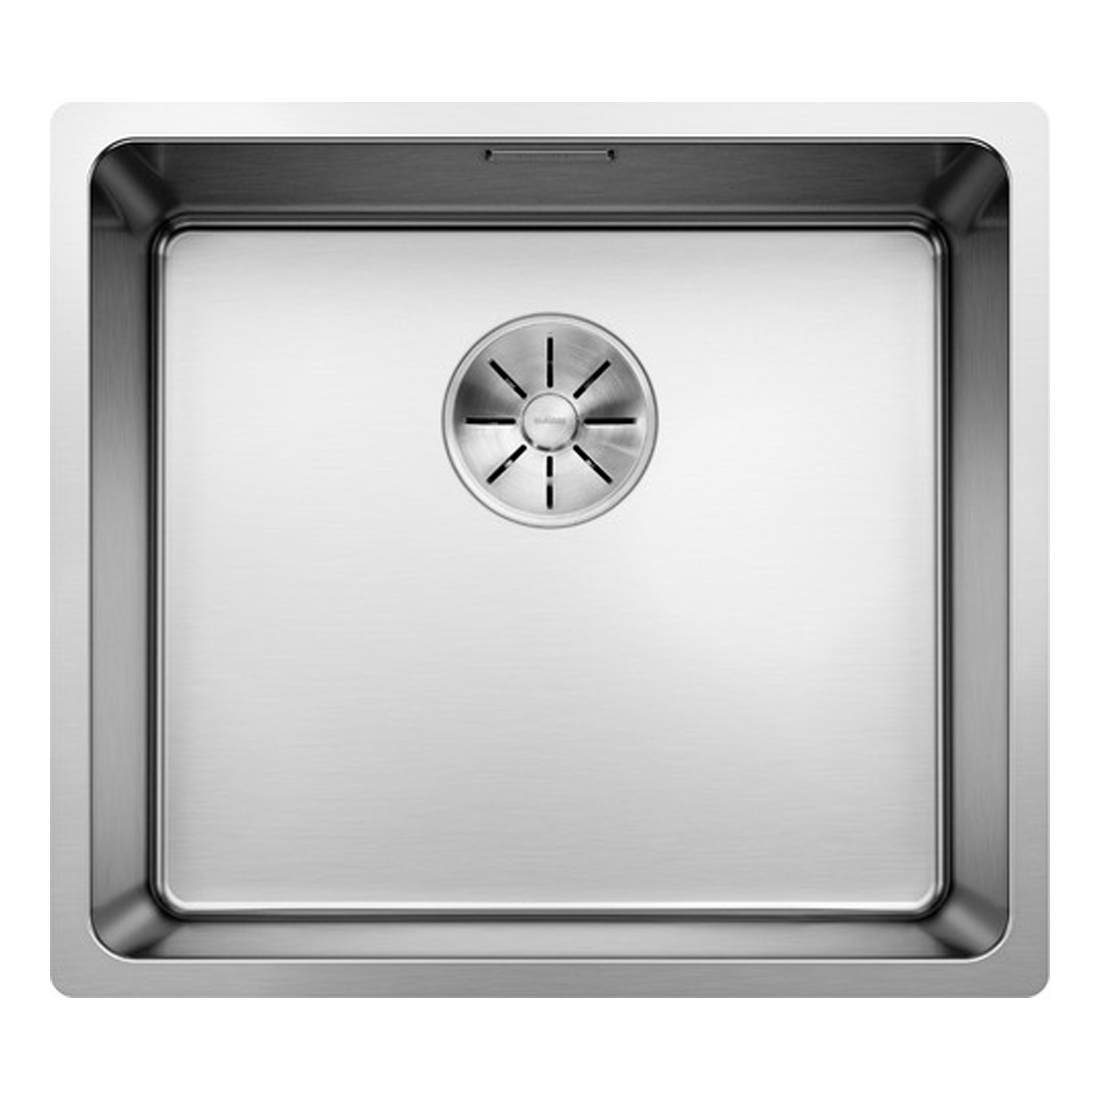 Кухонная мойка Blanco Andano 450-U полированная сталь кухонная мойка blanco supra 450 u сталь